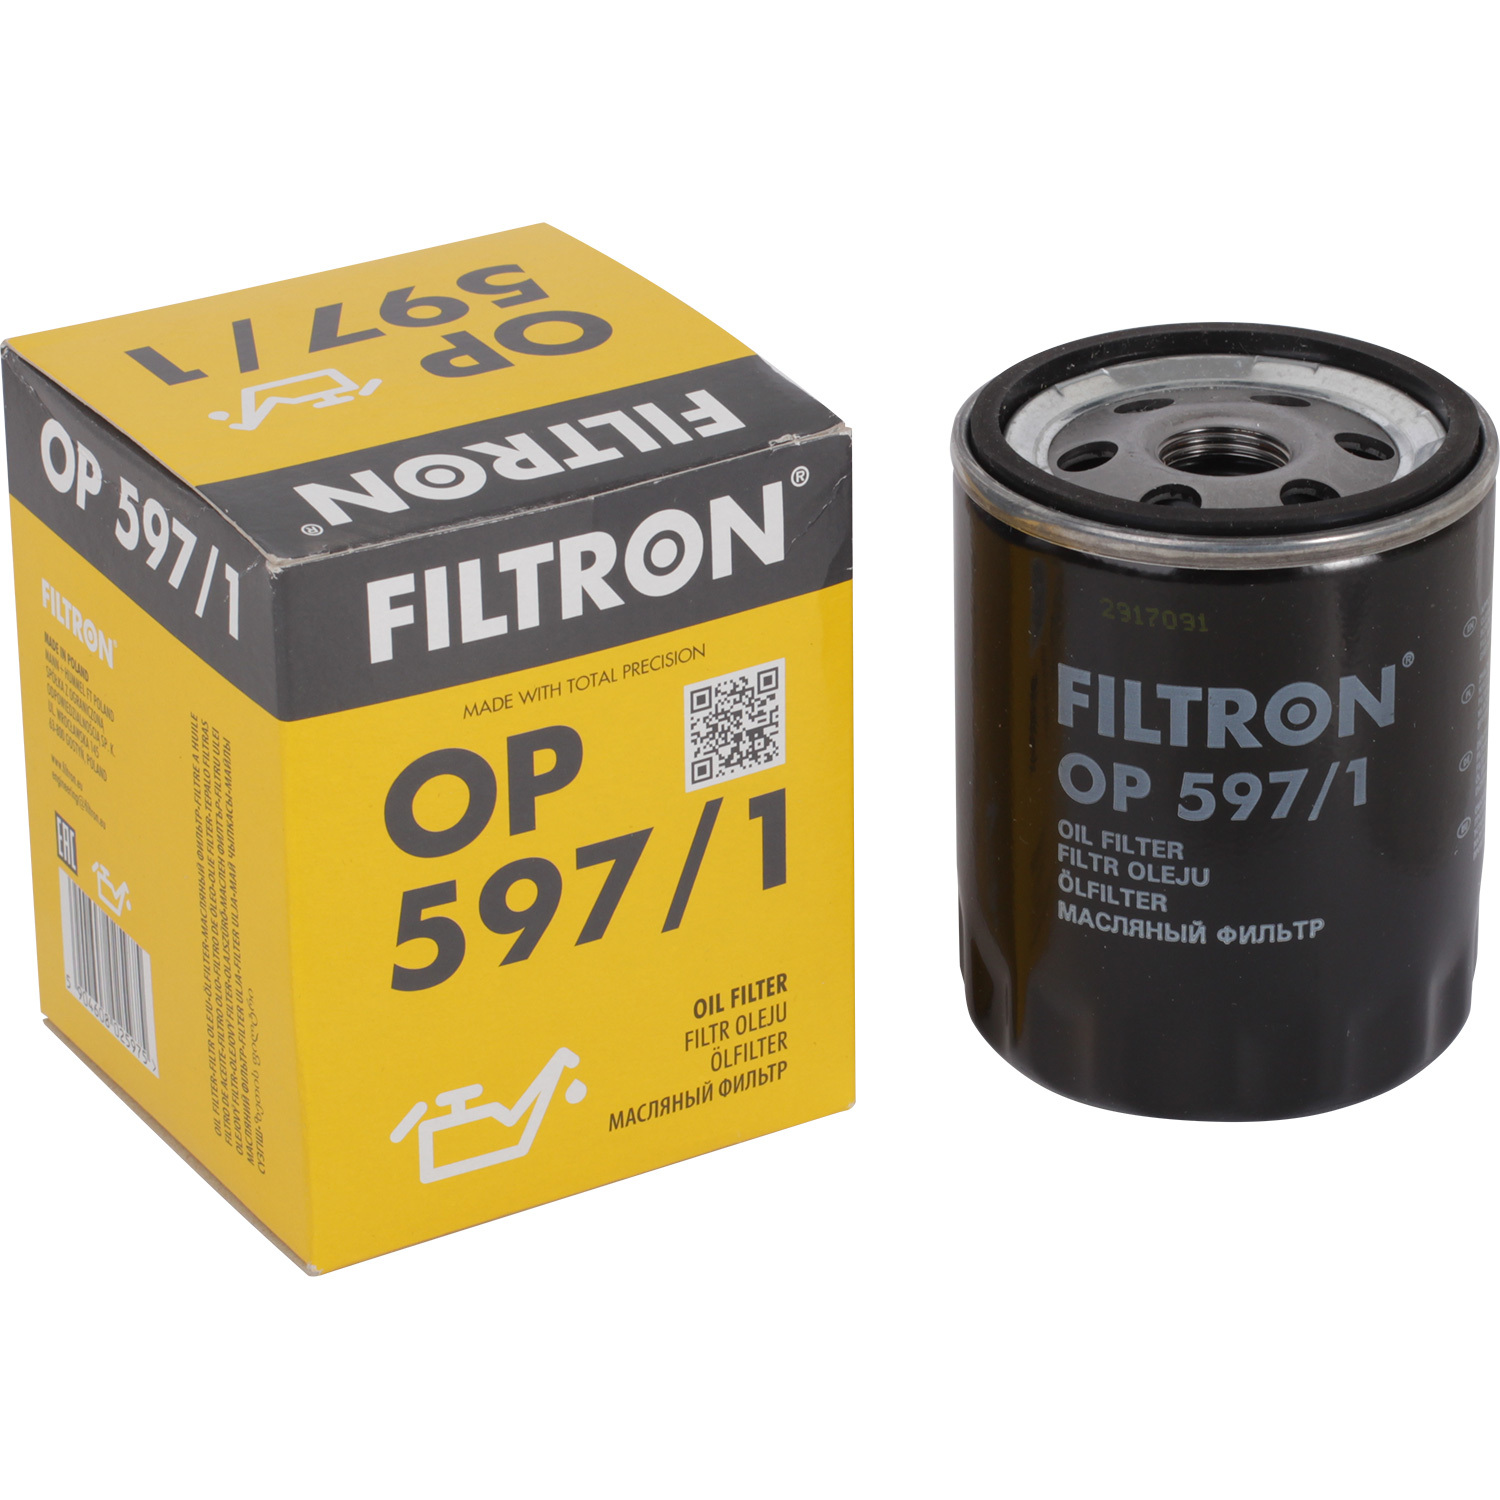 фильтры filtron фильтр масляный filtron oe671 Фильтры Filtron Фильтр масляный Filtron OP5971